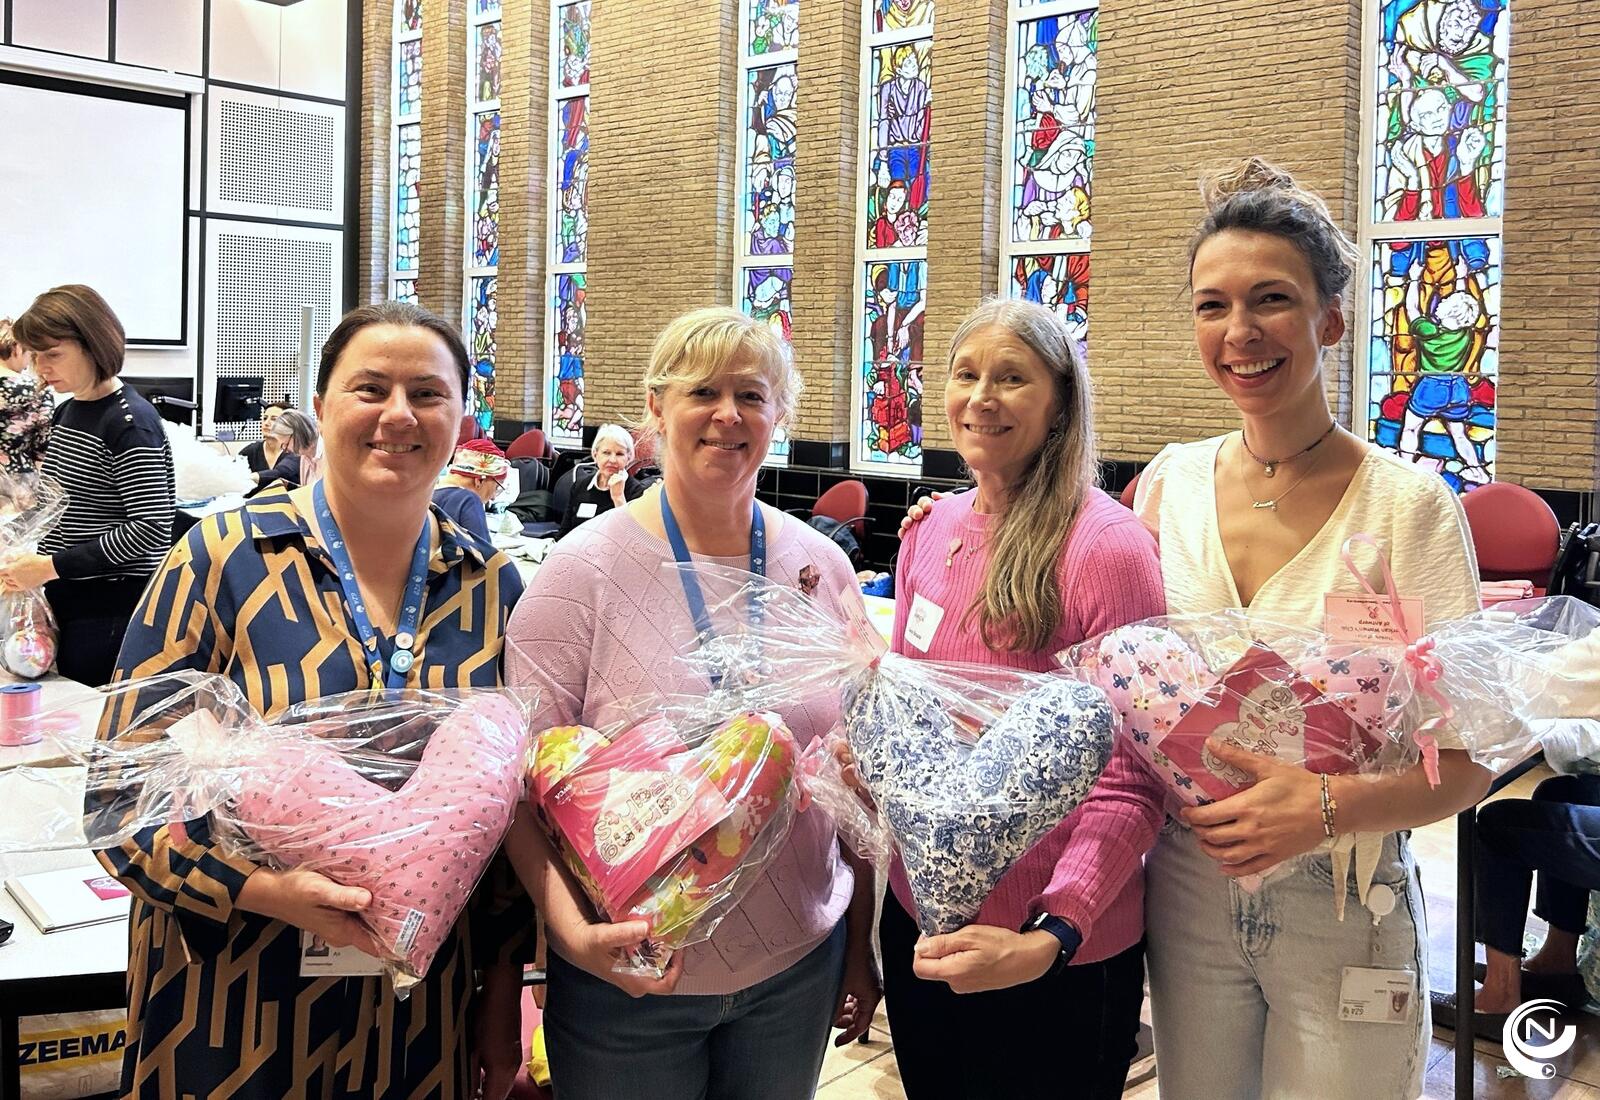 Borstkliniek van GZA Ziekenhuizen en de American Women’s Club of Antwerp (AWCA) samen kussentjes voor borstkankerpatiënten